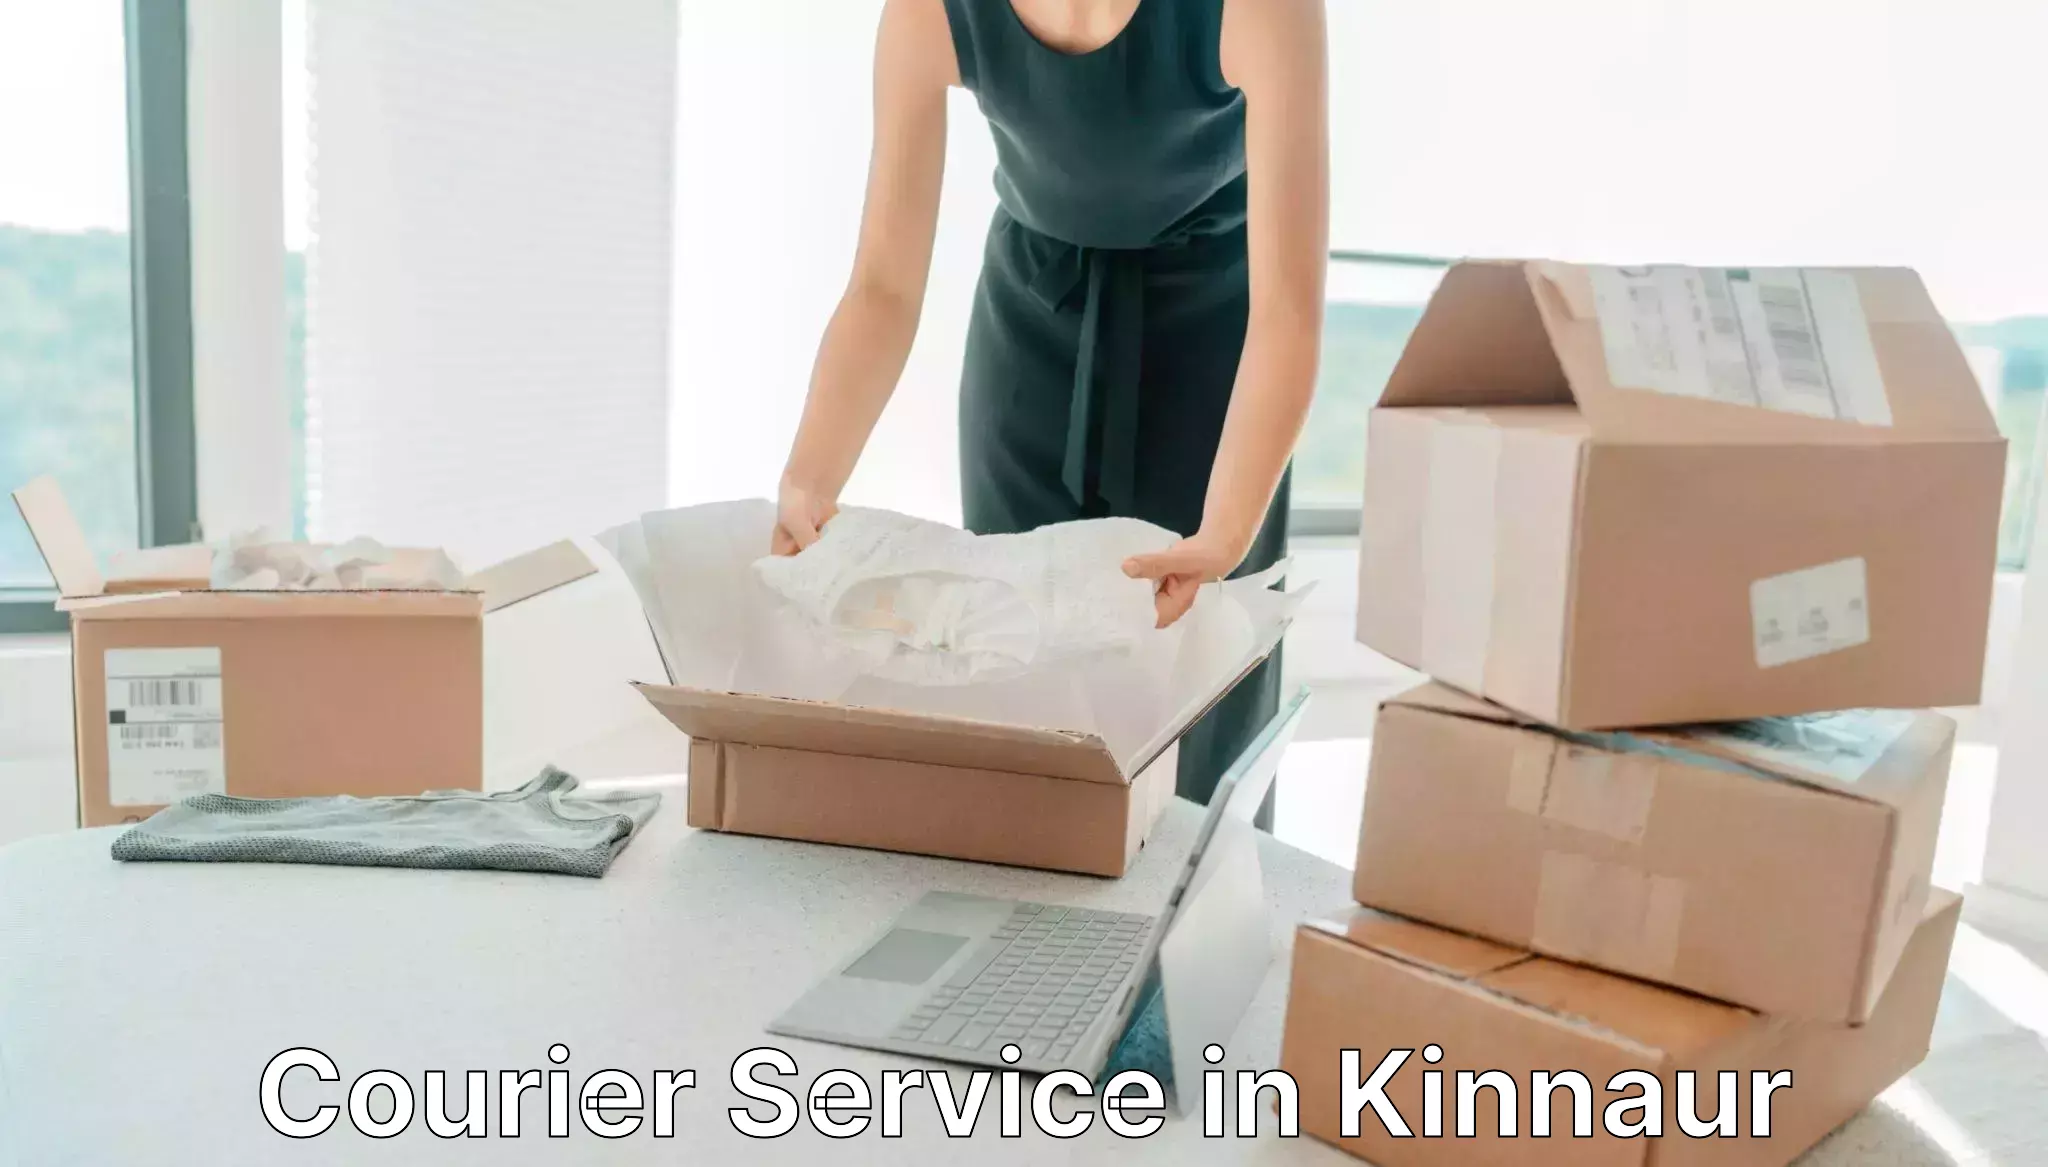 Nationwide courier service in Kinnaur